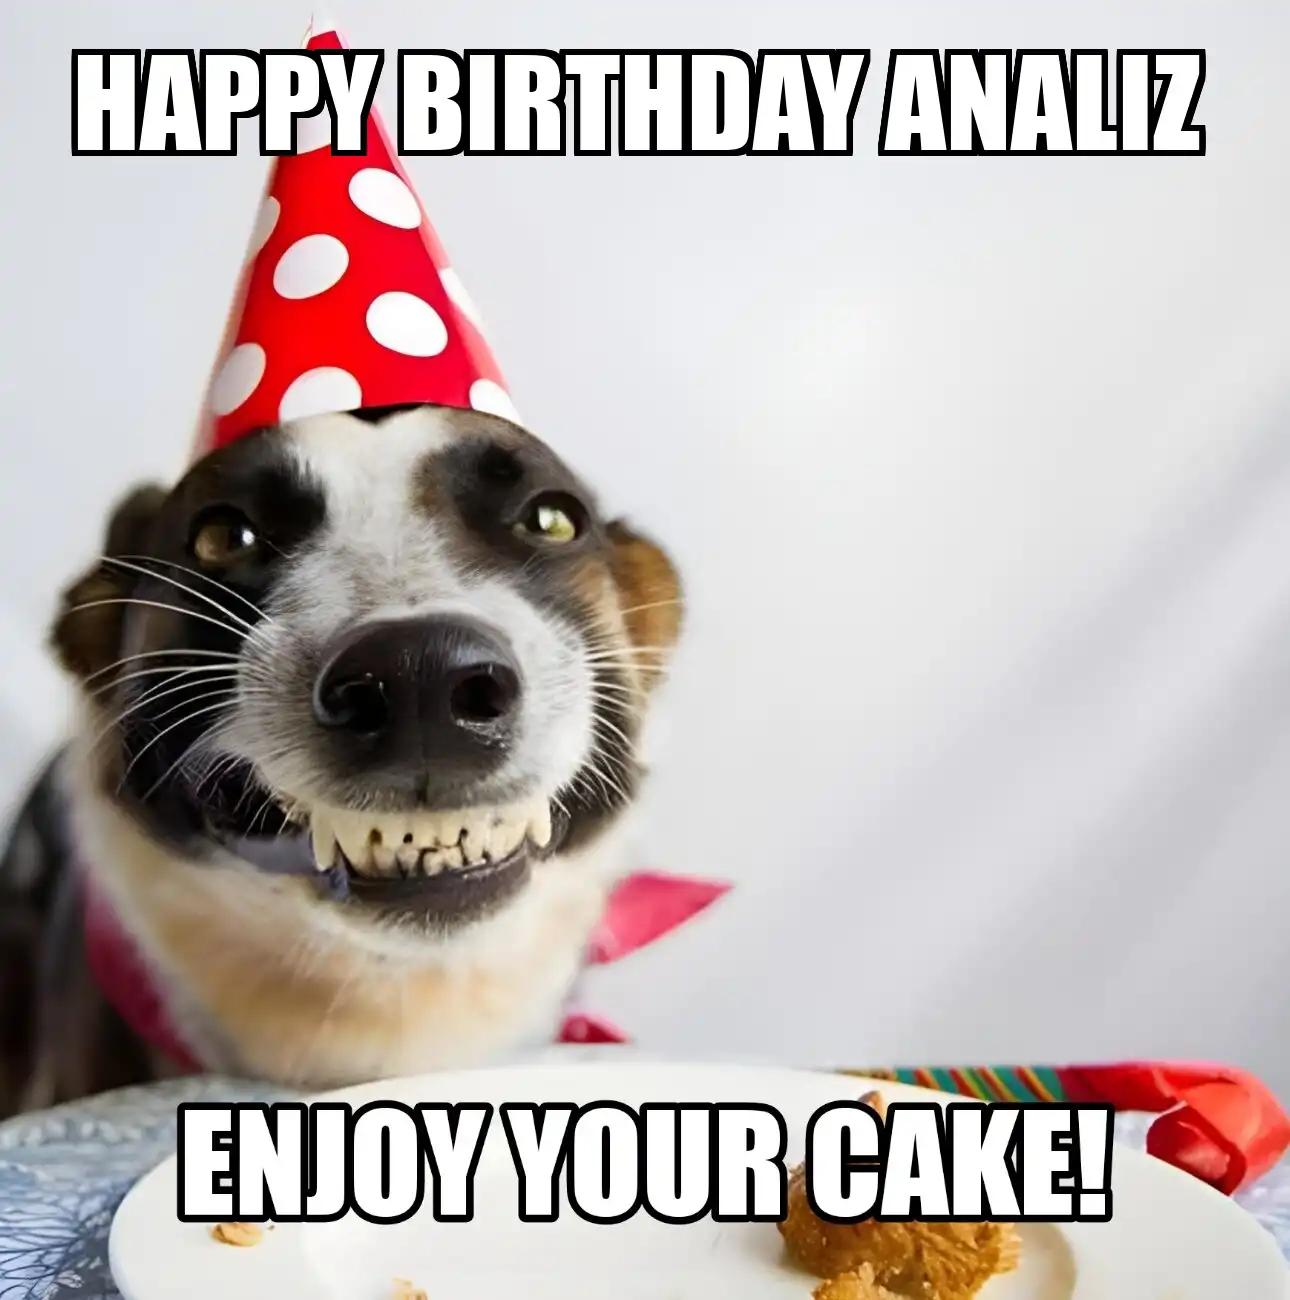 Happy Birthday Analiz Enjoy Your Cake Dog Meme